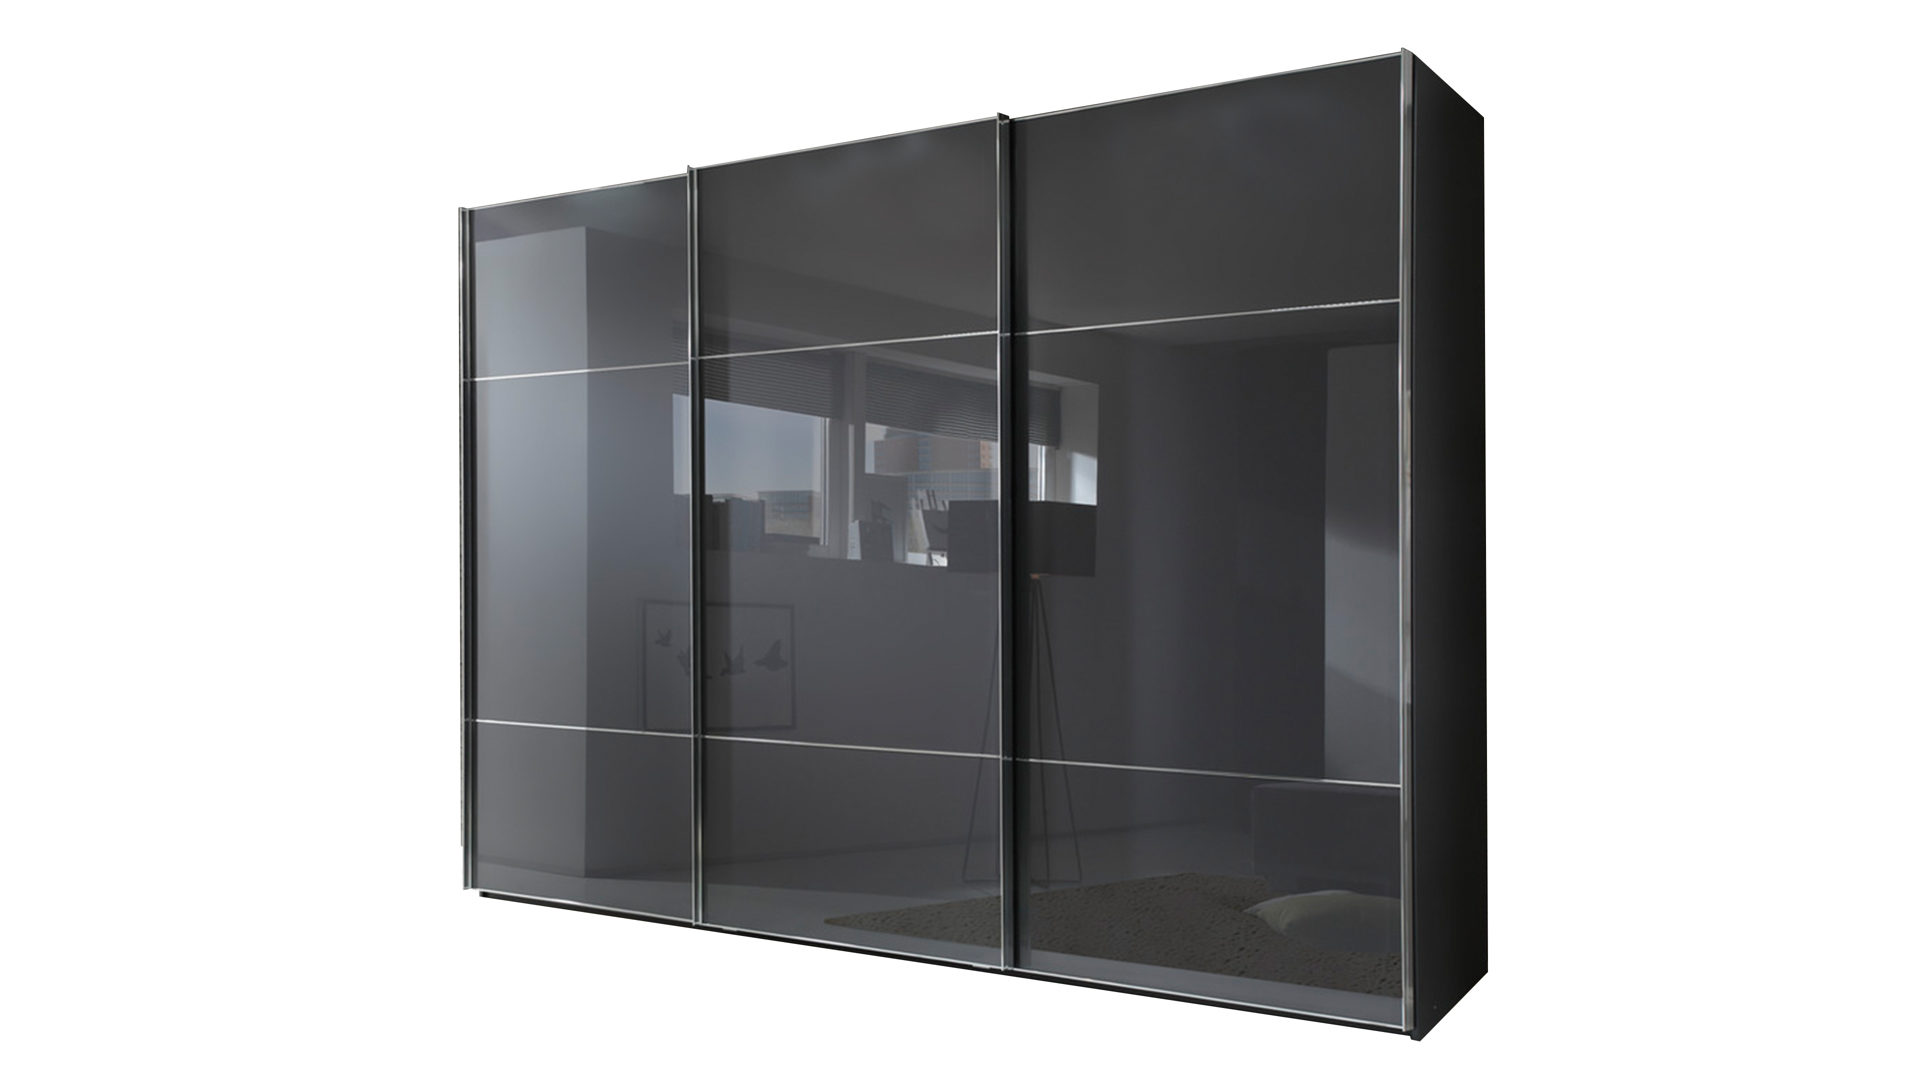 Kleiderschrank Nolte möbel | germersheim aus Glas in Grau Schwebetürenschrank Marcato 2.3 graphit- & basaltfarbene Oberflächen – drei Türen